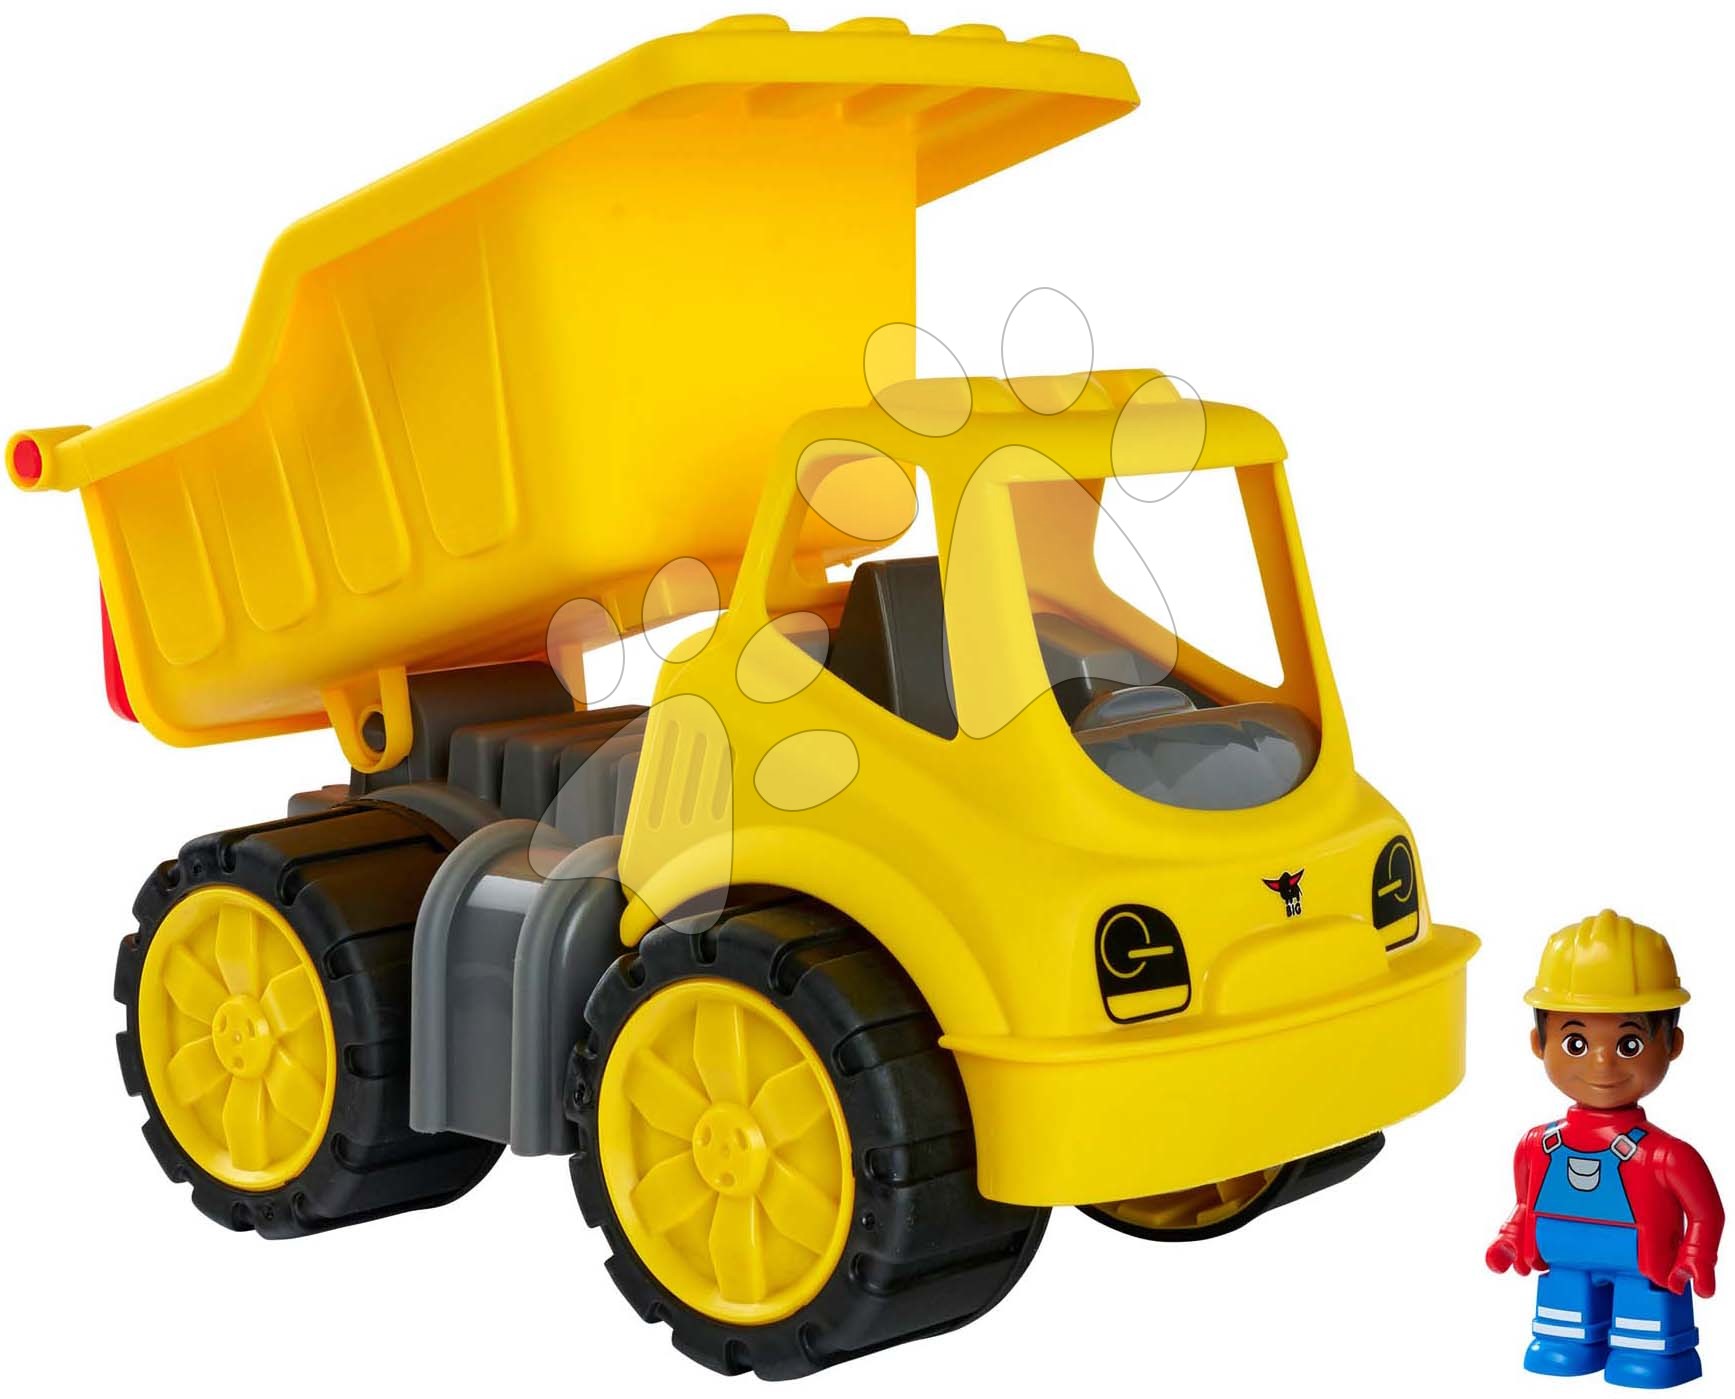 Tovornjaki - Prekucnik Power Worker Dumper+Figurine BIG delovni stroj 33 cm z gumiranimi kolesi od 2 leta